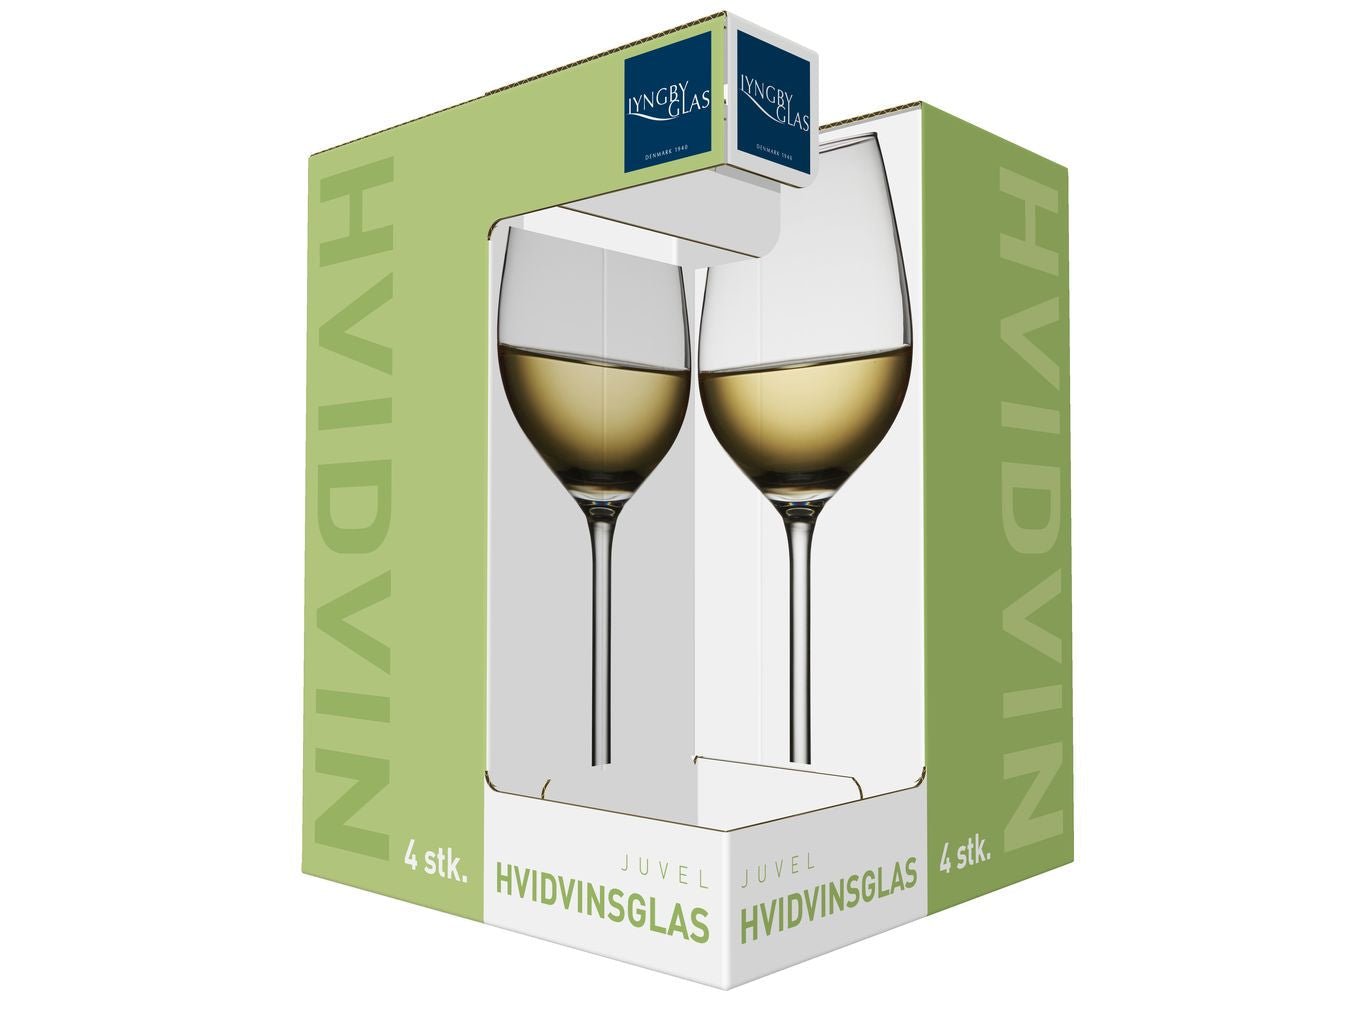 Lyngby Glas Juvel White Wine Klas 38 CL, 4 szt.